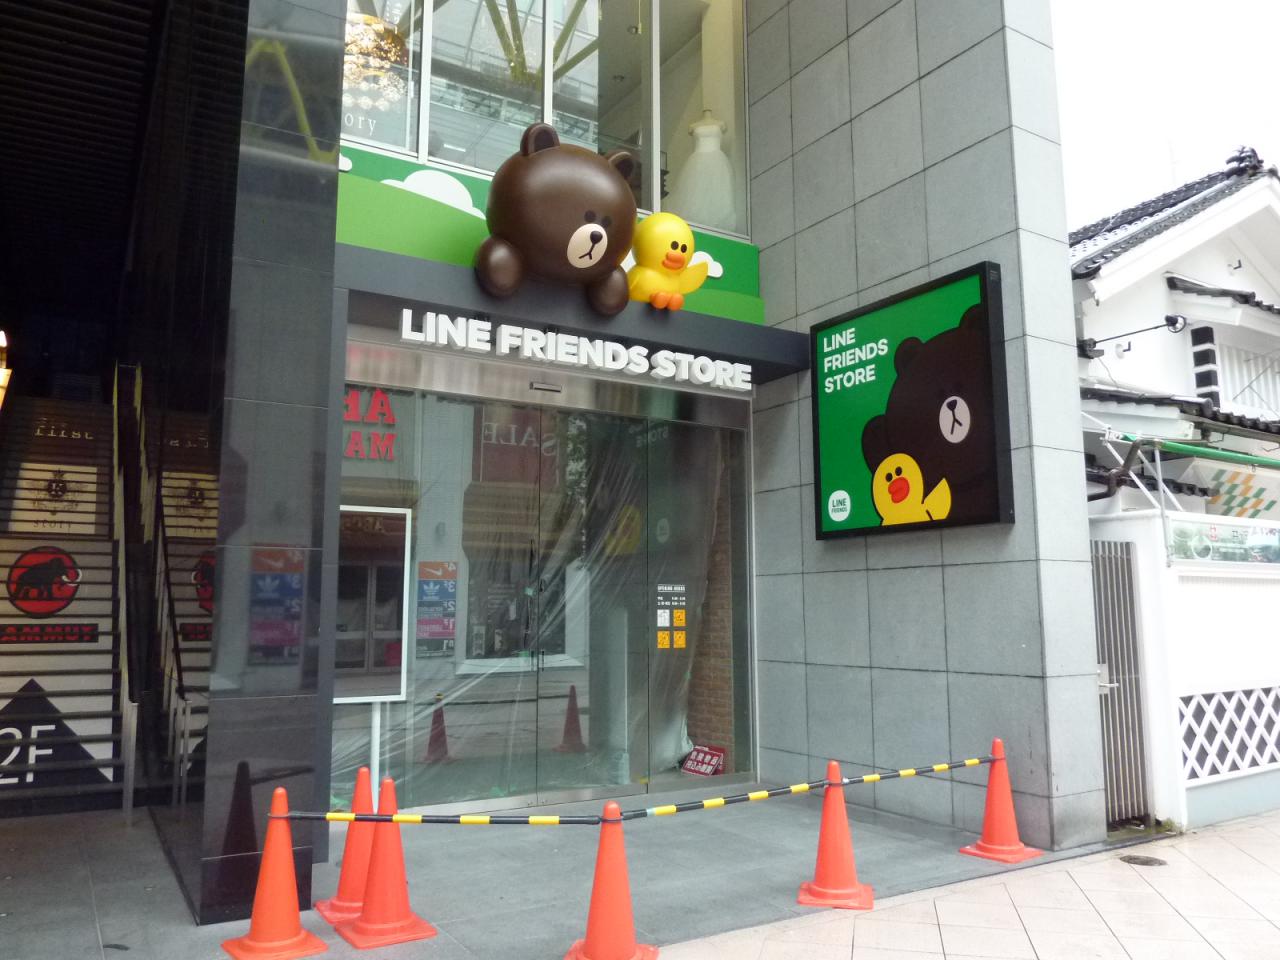 Line Friends Store 仙台 仙台の風景や街並みを写真で紹介する みでけさin仙台 みでけさいん仙台